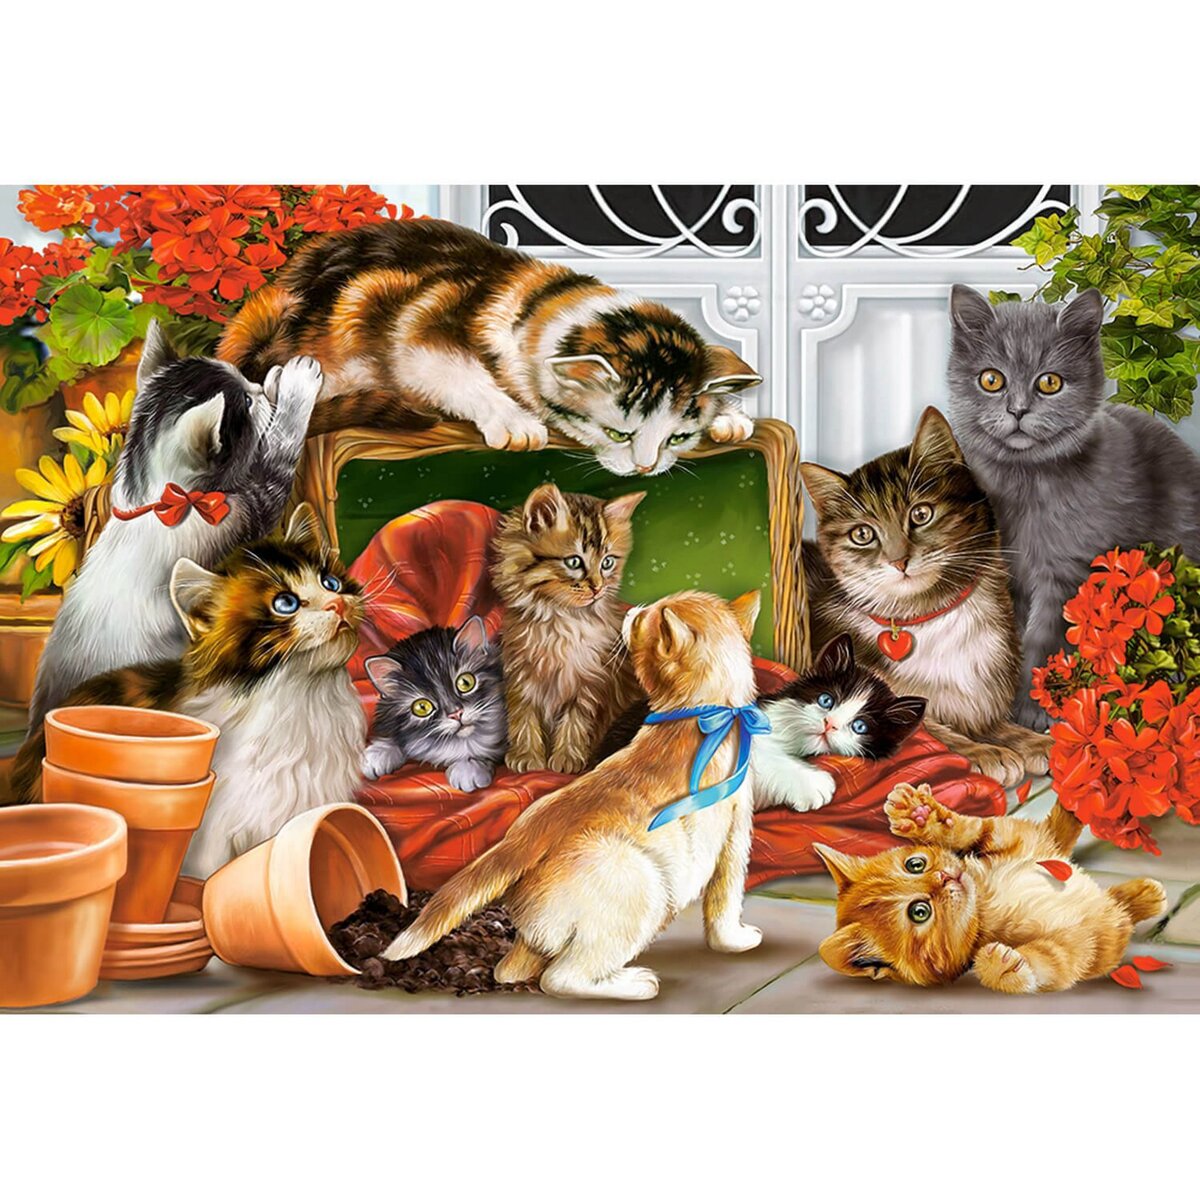 Castorland Puzzle 1500 pièces : Moment de jeu entre chatons